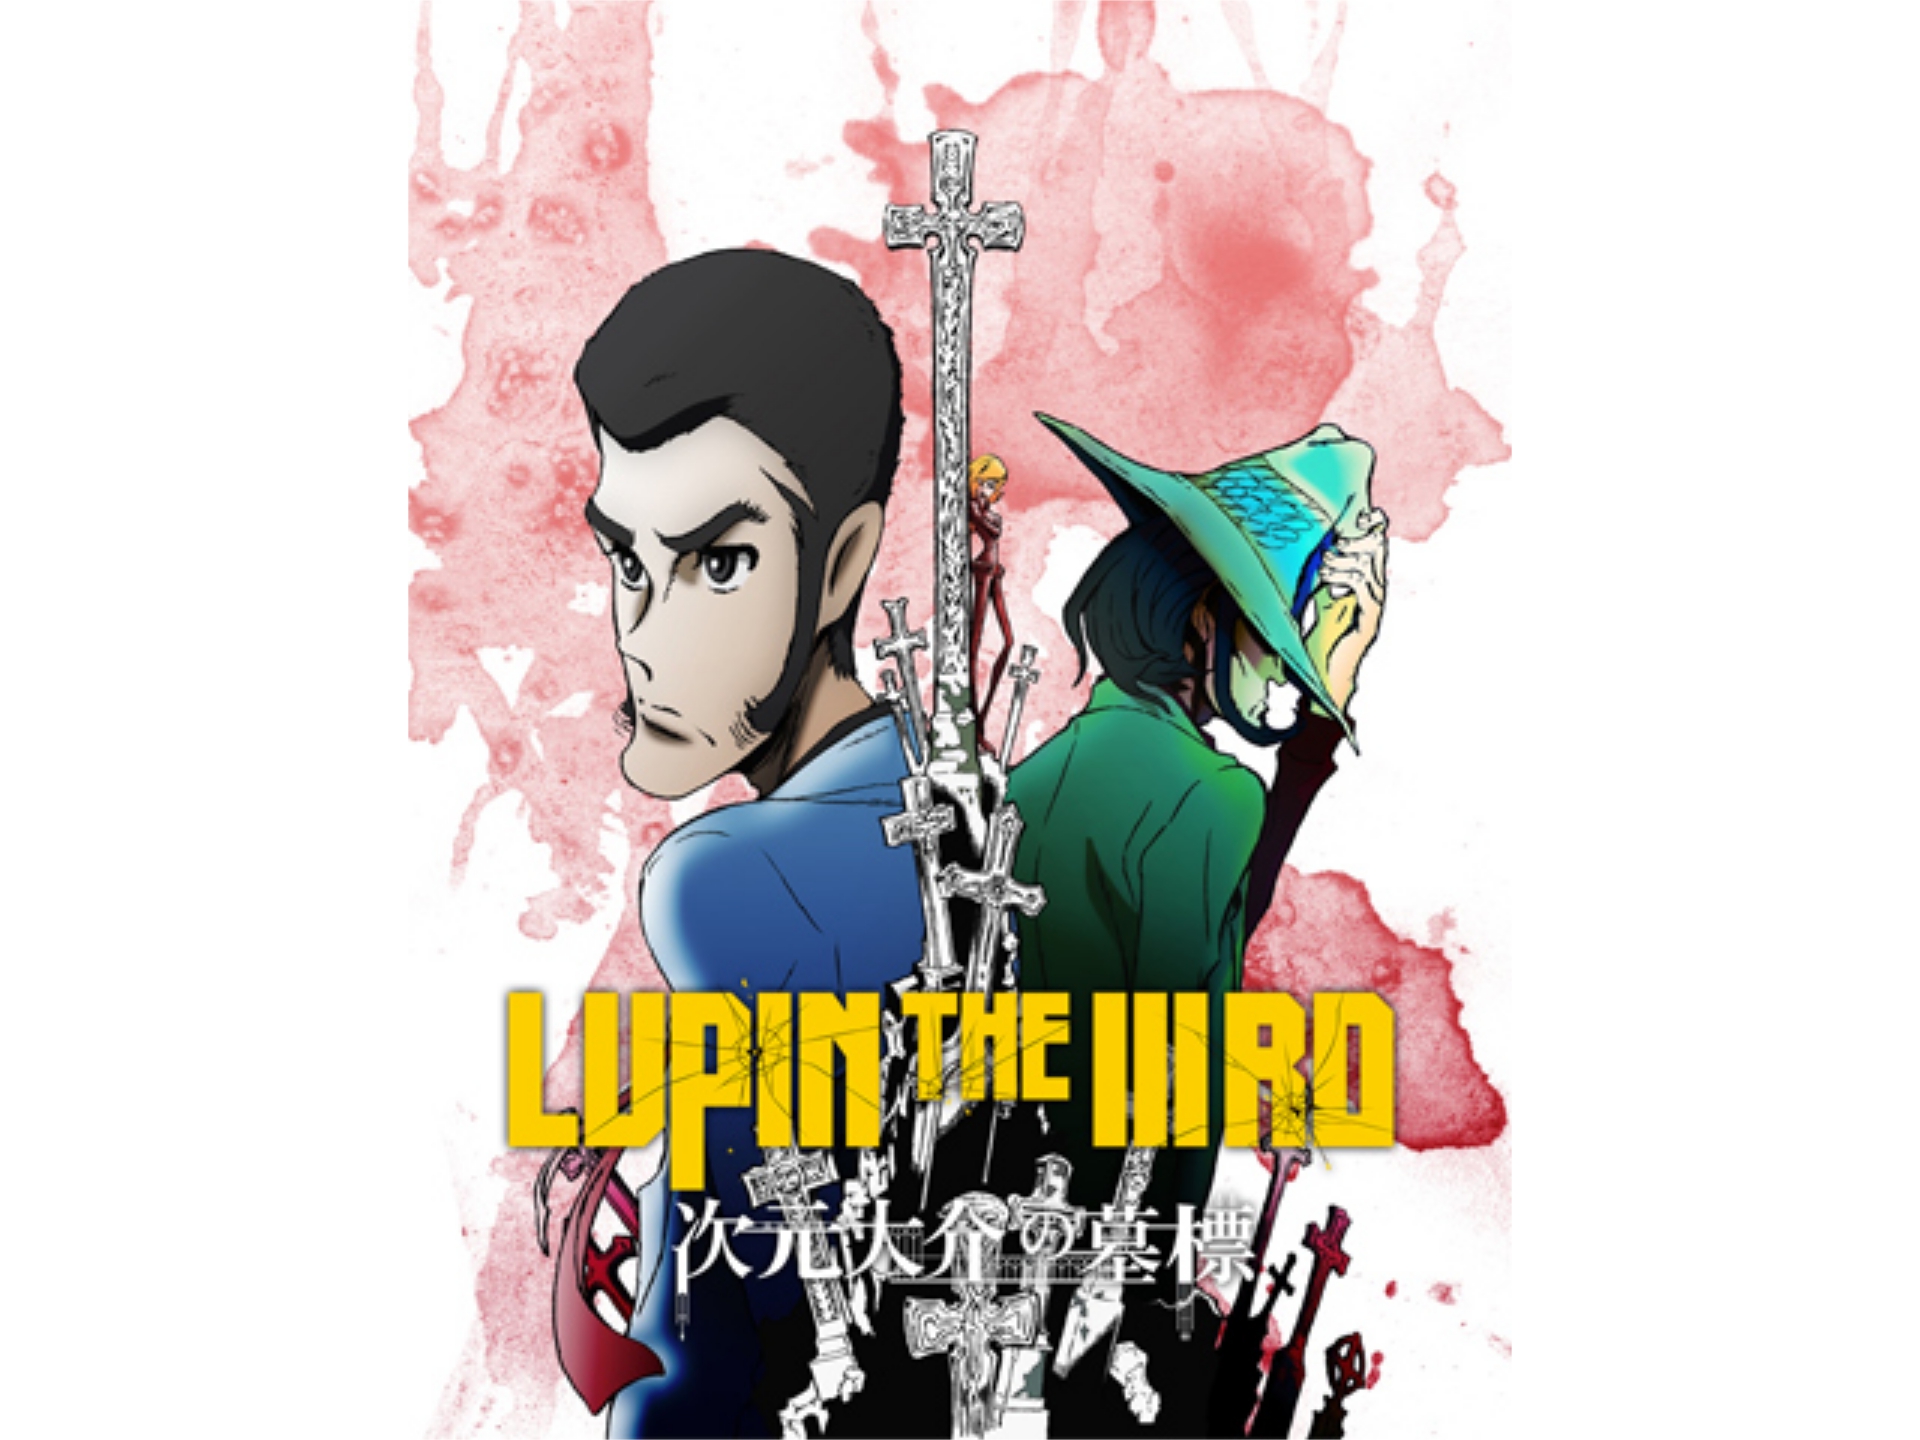 無料視聴あり アニメ Lupin The Iiird 次元大介の墓標 の動画 初月無料 動画配信サービスのビデオマーケット